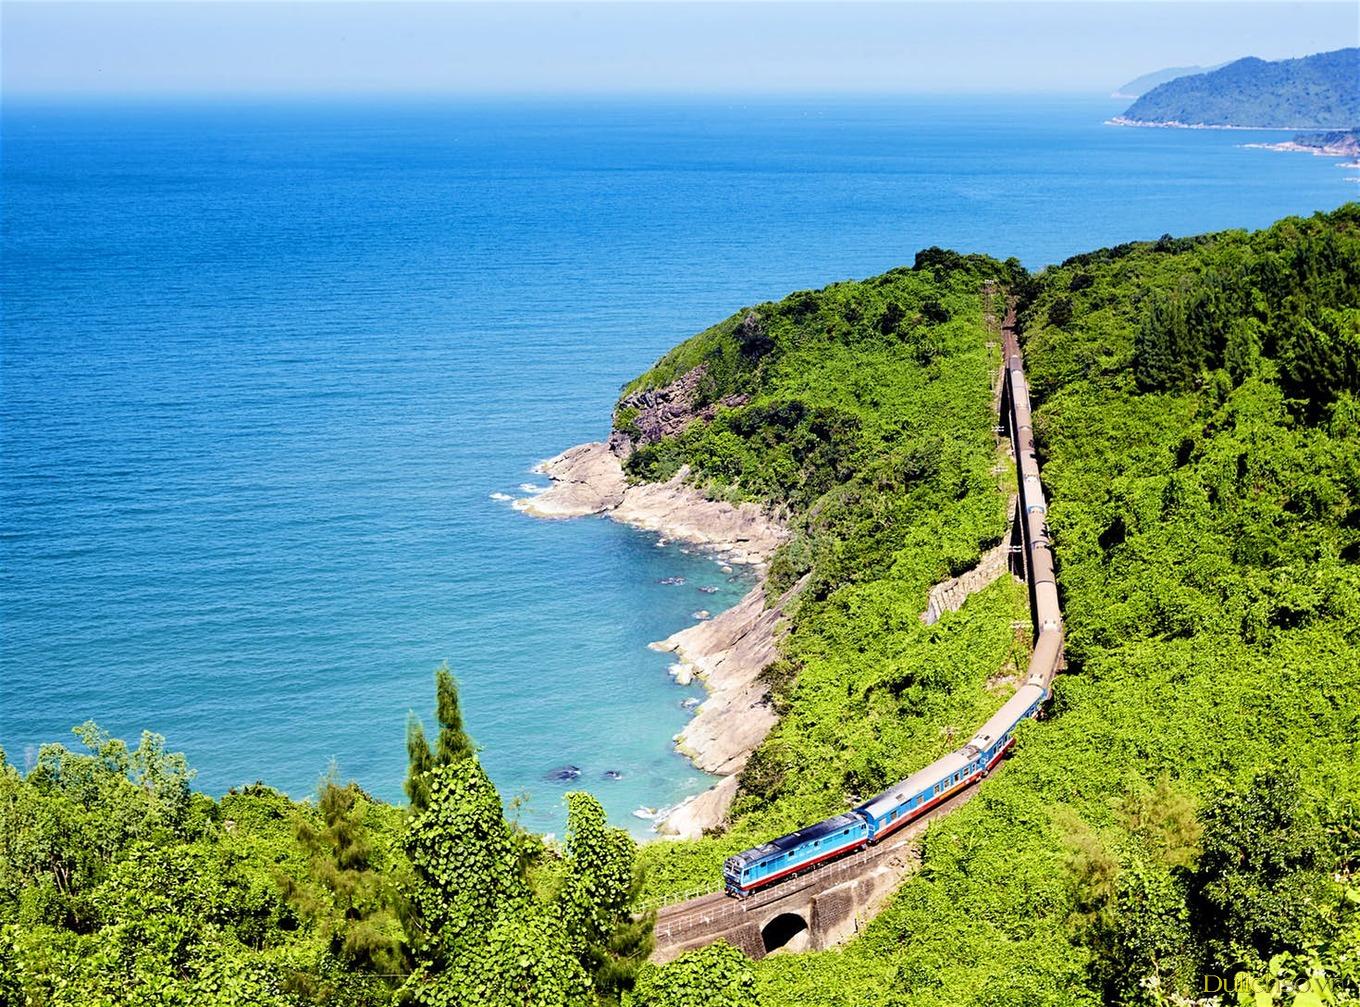 Tàu hoả đang đi trên tuyến đường đến Ninh Thuận, xung quanh là đồi núi xanh mênh mông và biển trong xanh bao bọc